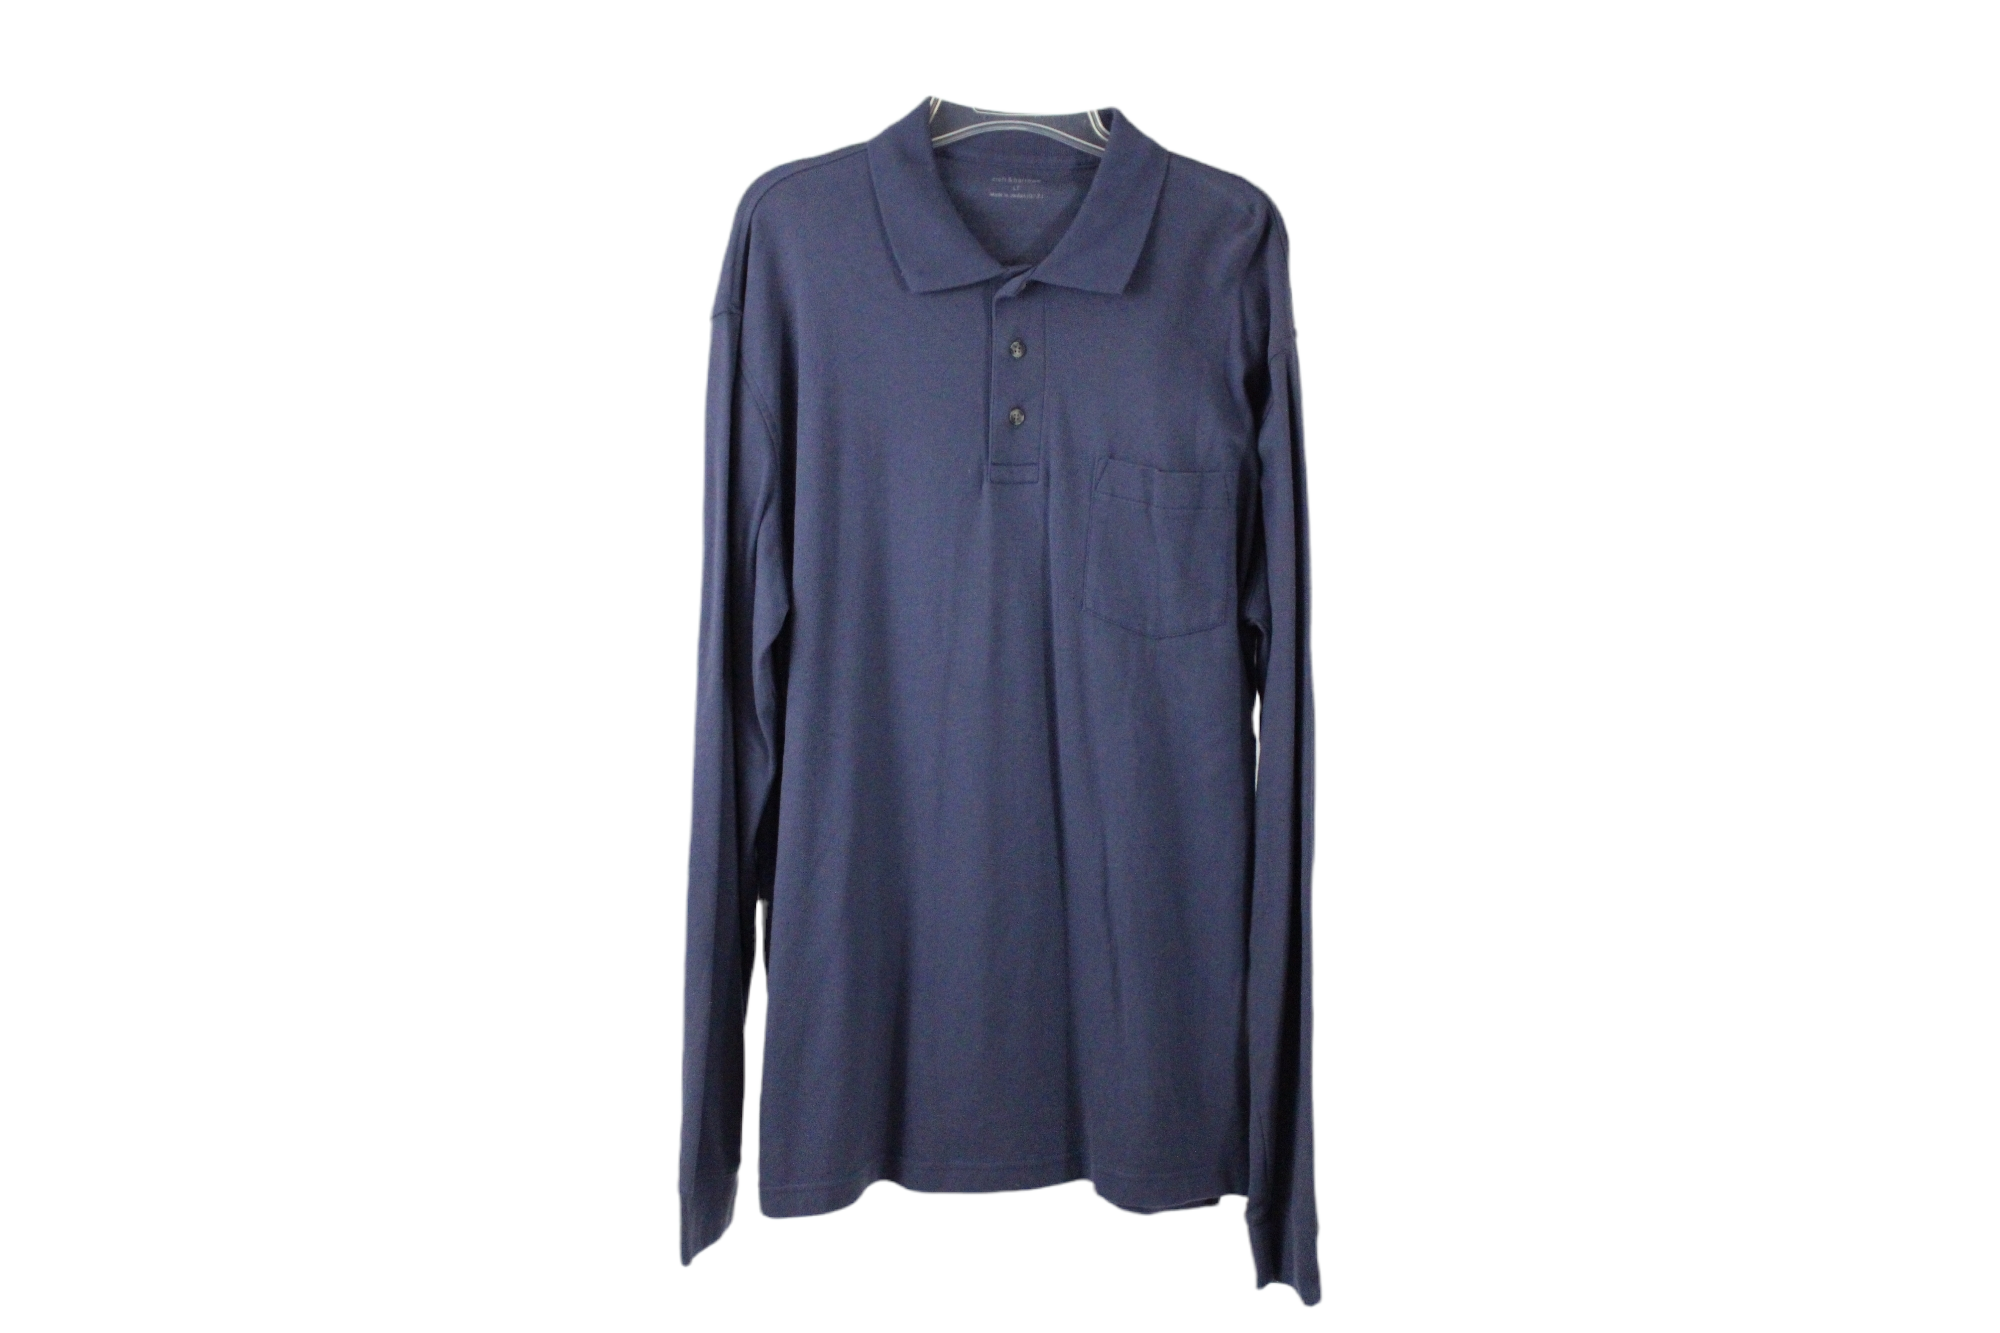 Croft & Barrow Dusty Blue Shirt | L Tall